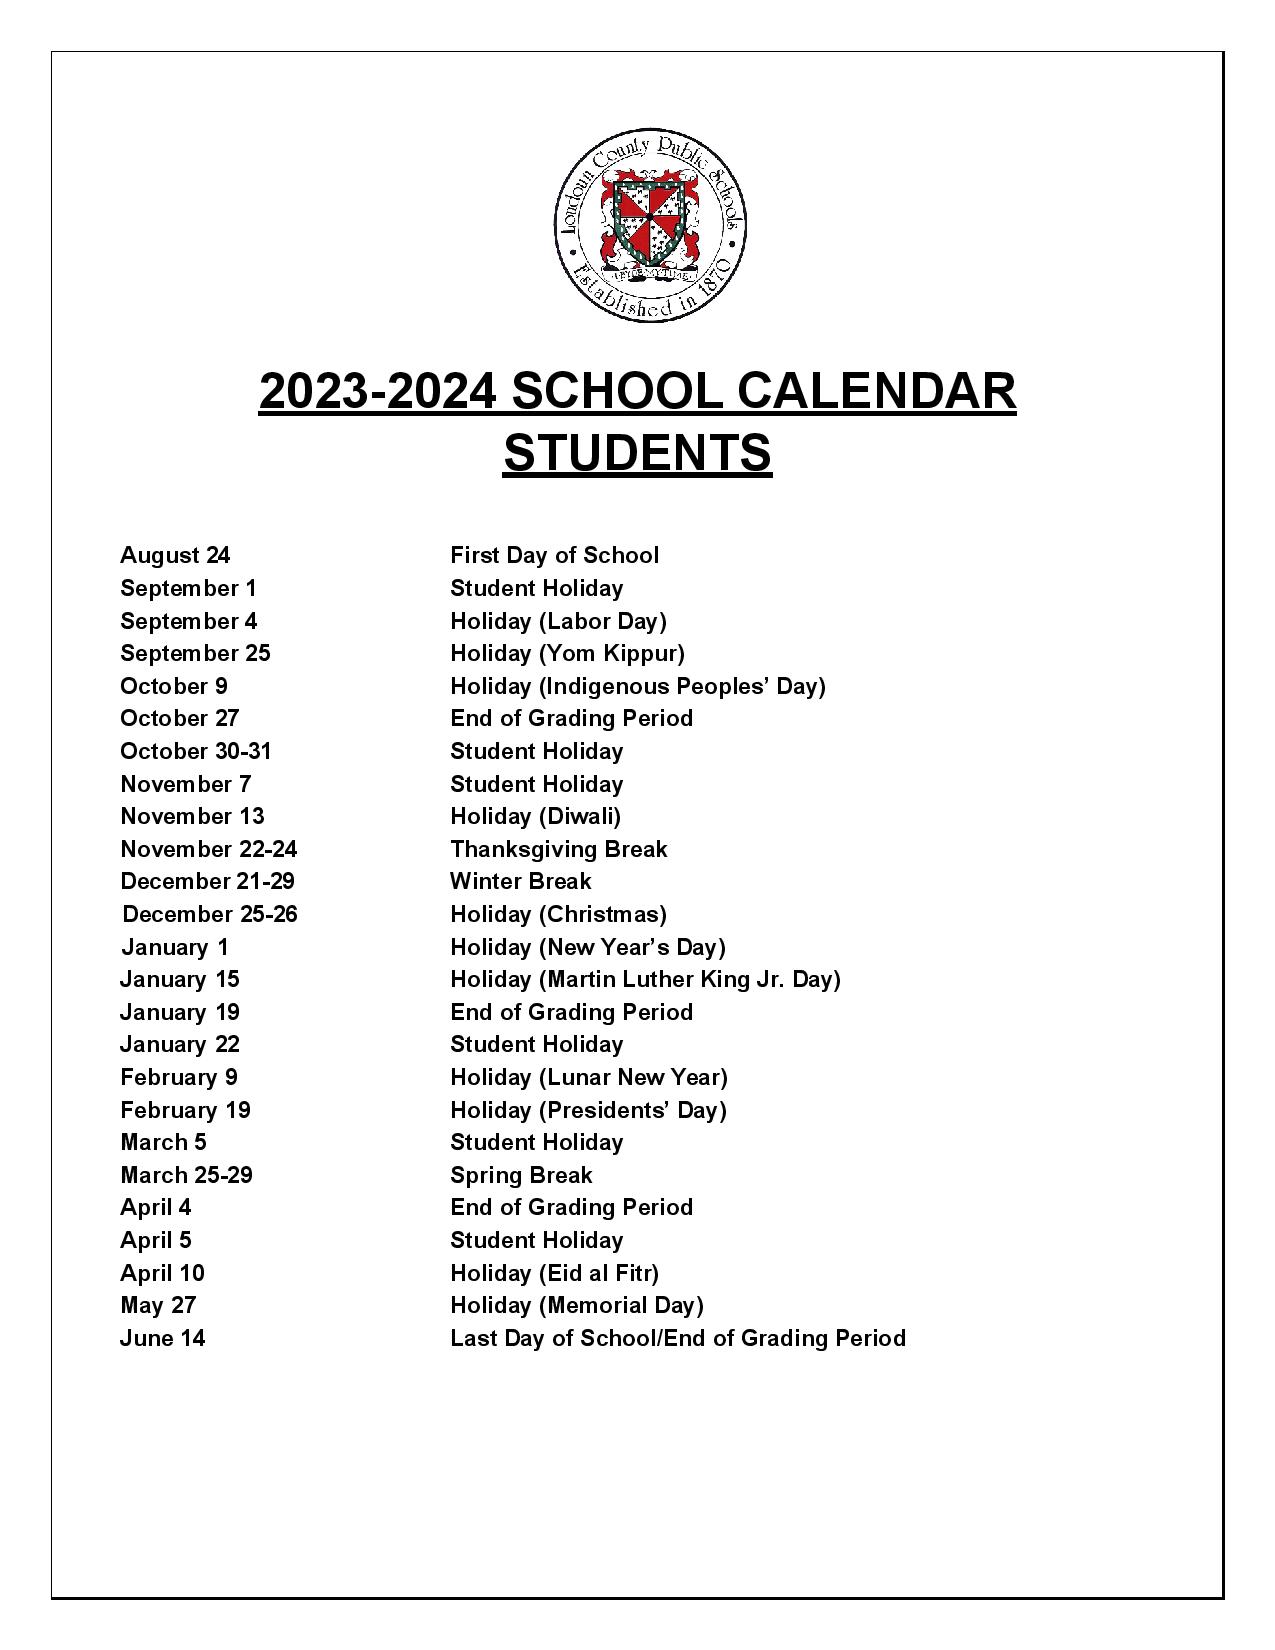 loudoun-county-public-schools-calendar-holidays-2023-2024